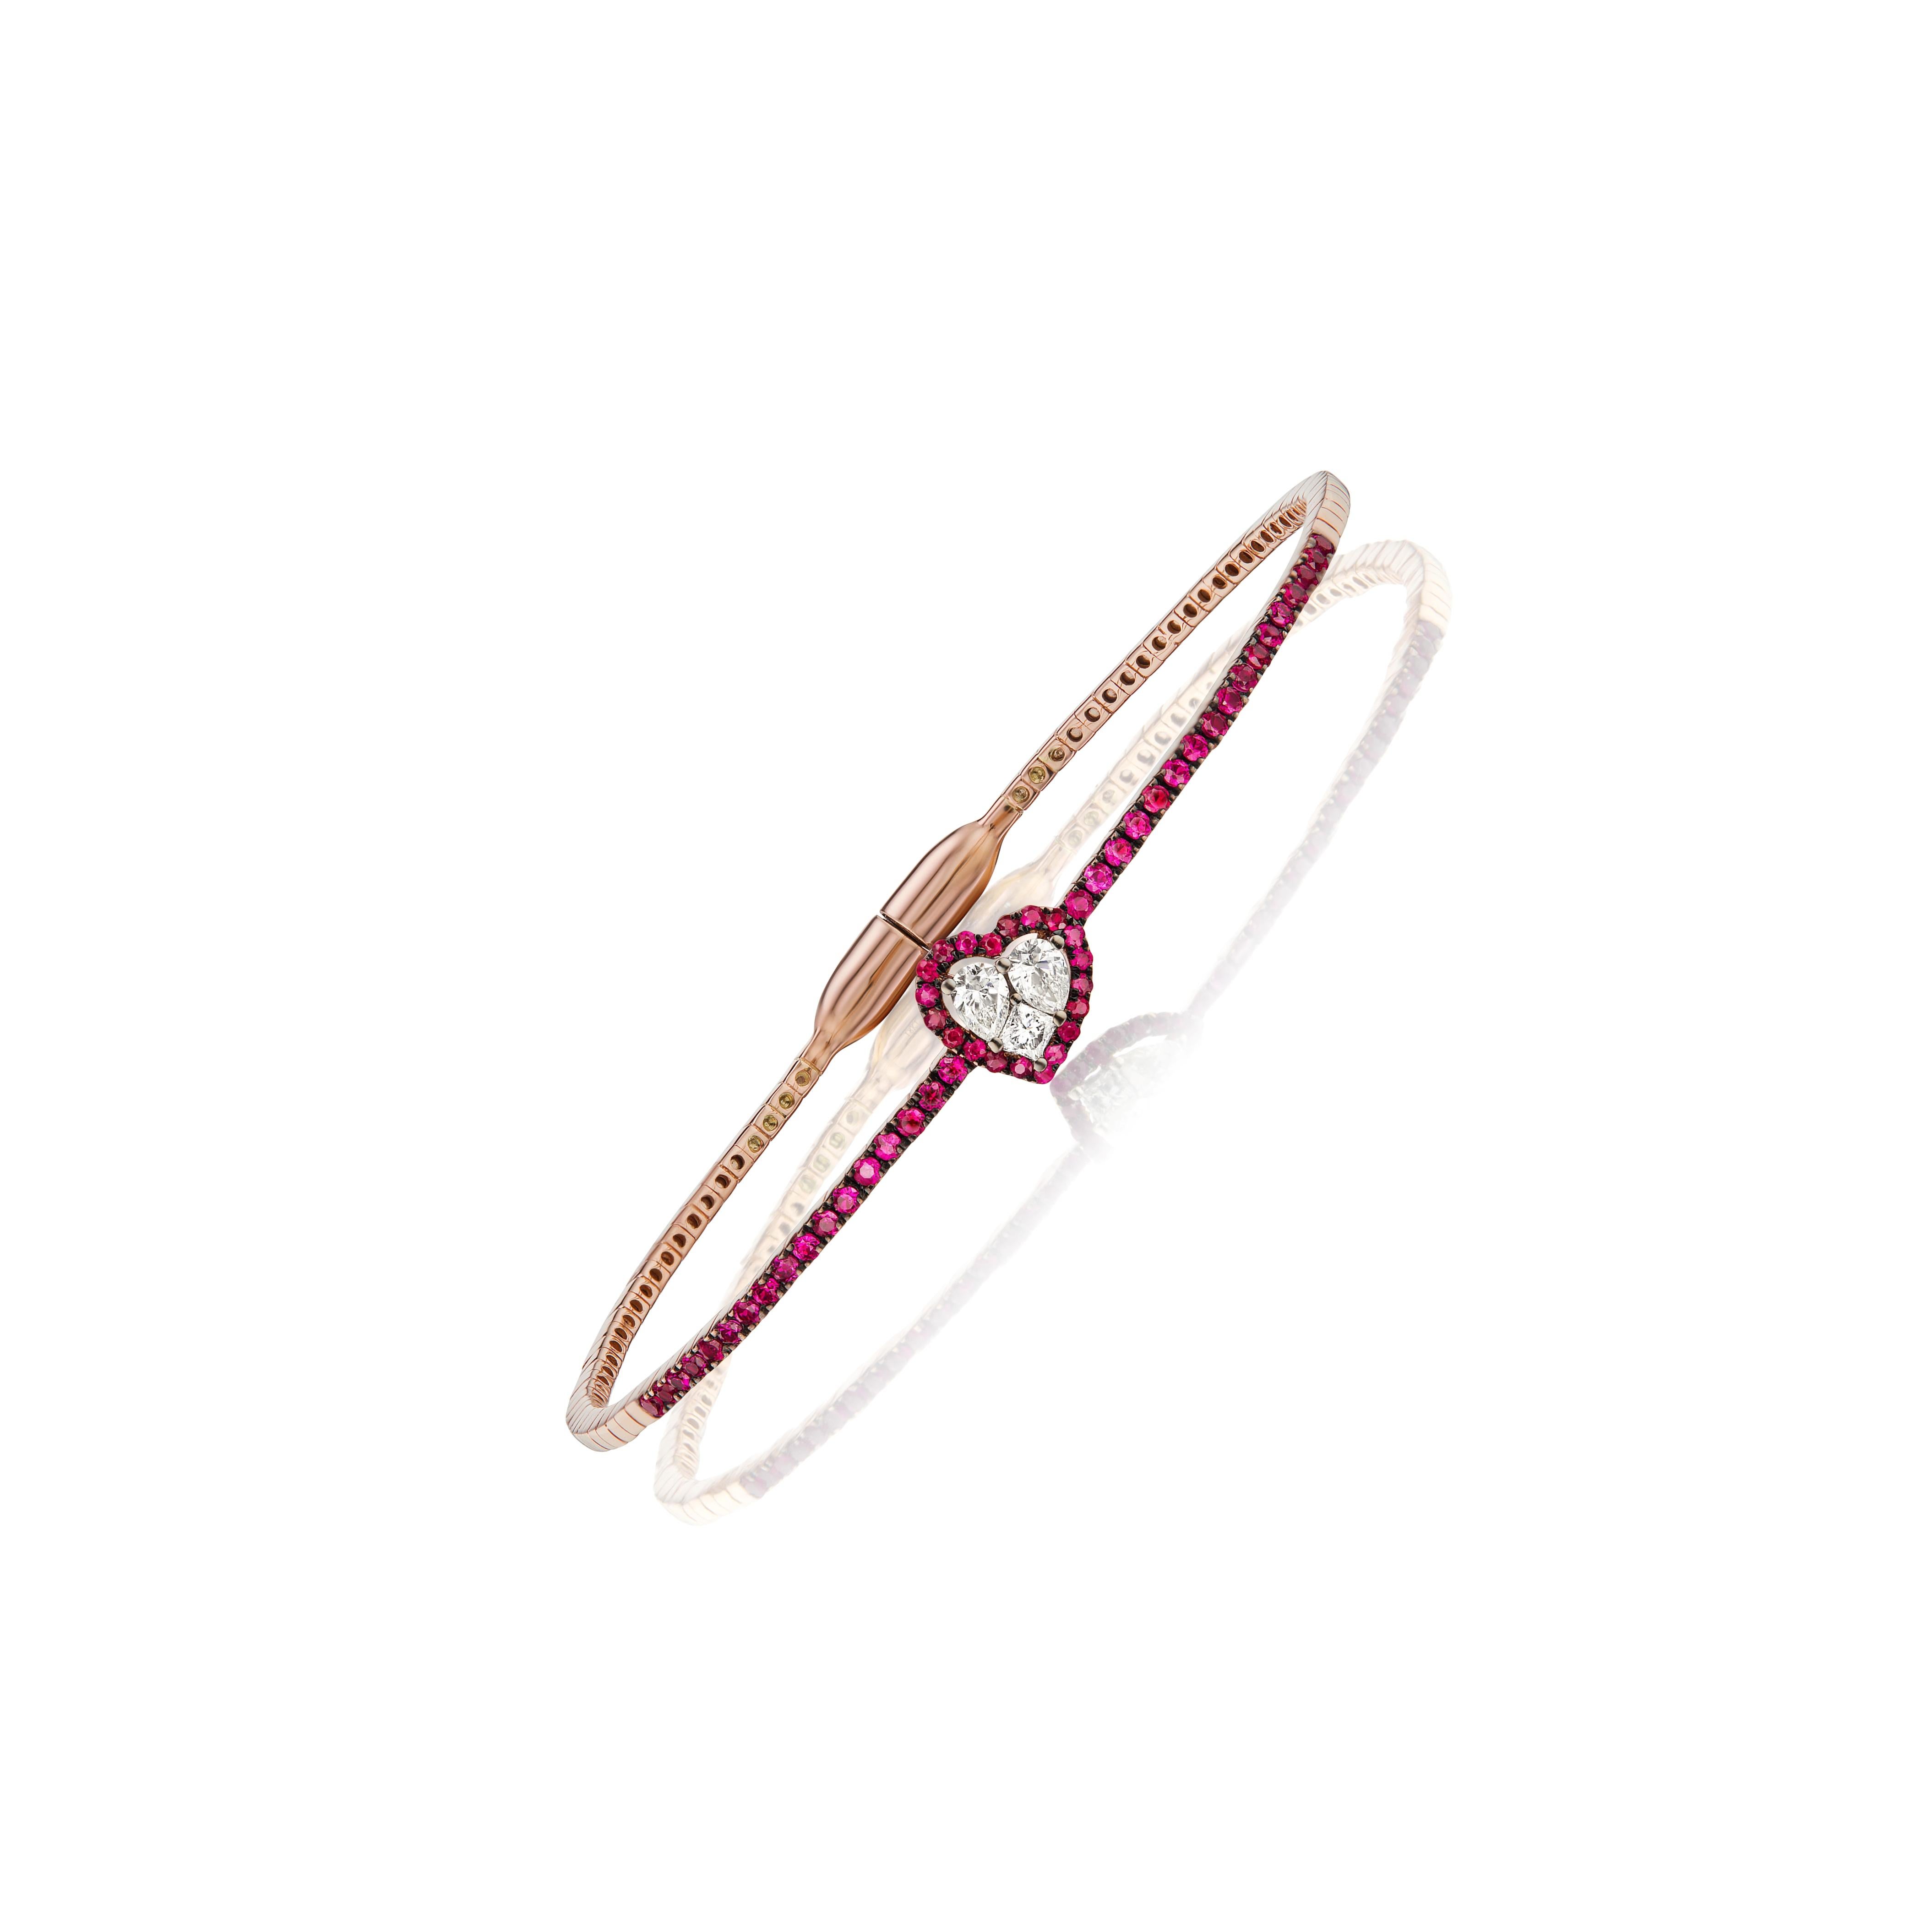 Voici le modèle Gemistry 1 Cttw. Bracelet en or 18 carats avec rubis et diamants en forme de cœur, un superbe symbole d'amour et d'engagement. Le motif en forme de cœur au centre du bracelet est composé d'une grappe de diamants et d'un halo de rubis